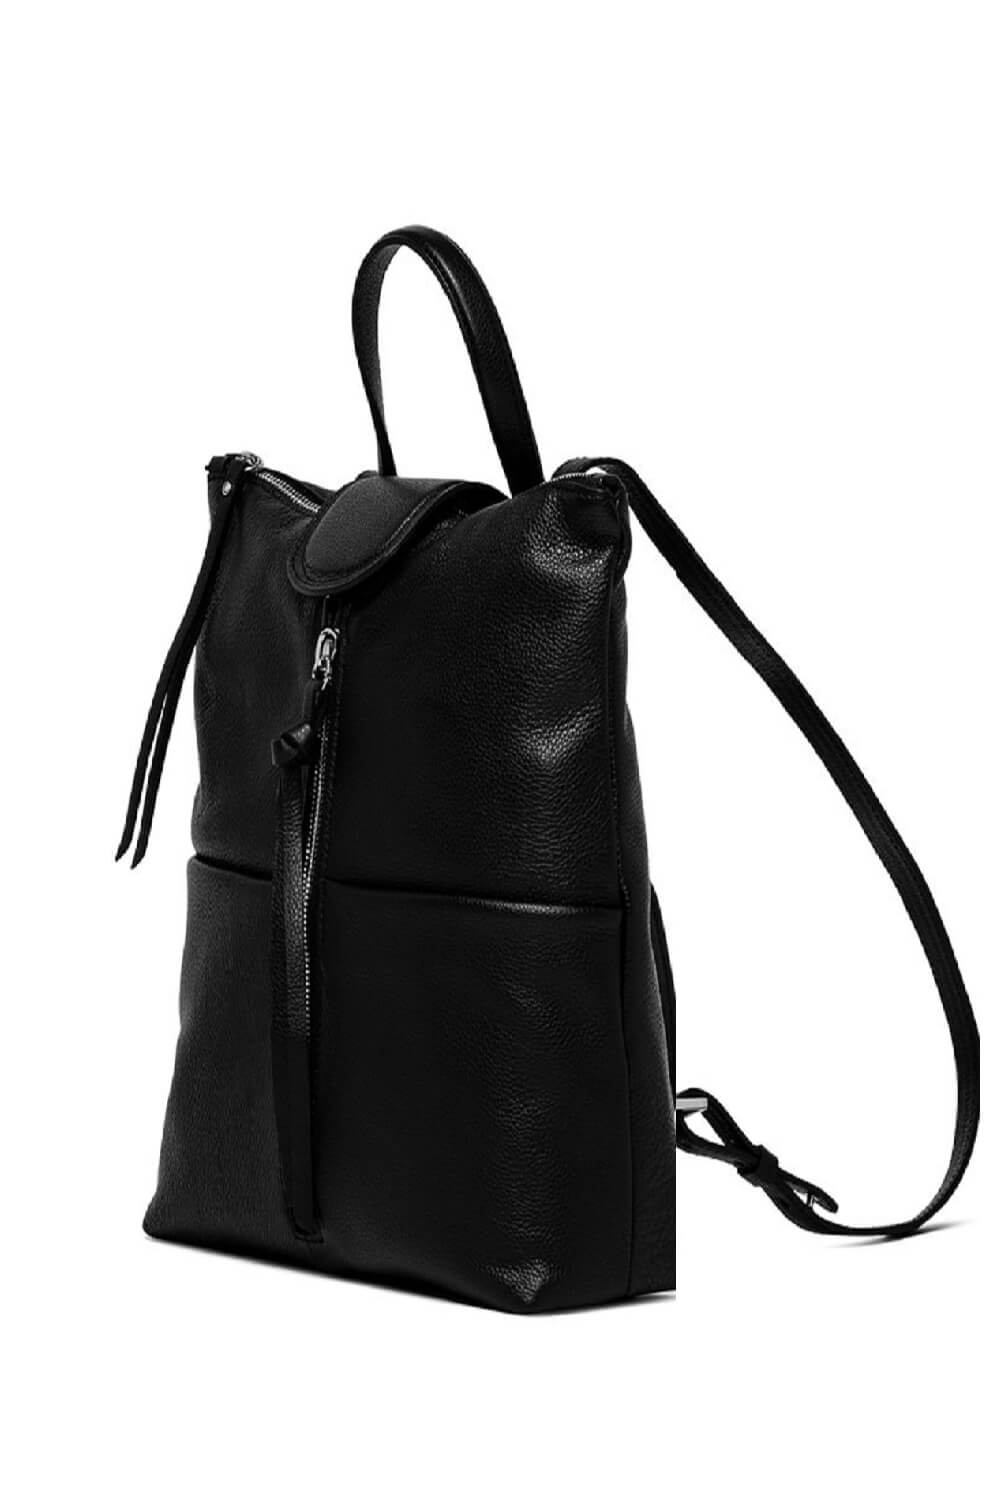 Goada Bag – Tiffany Boutique Cyprus